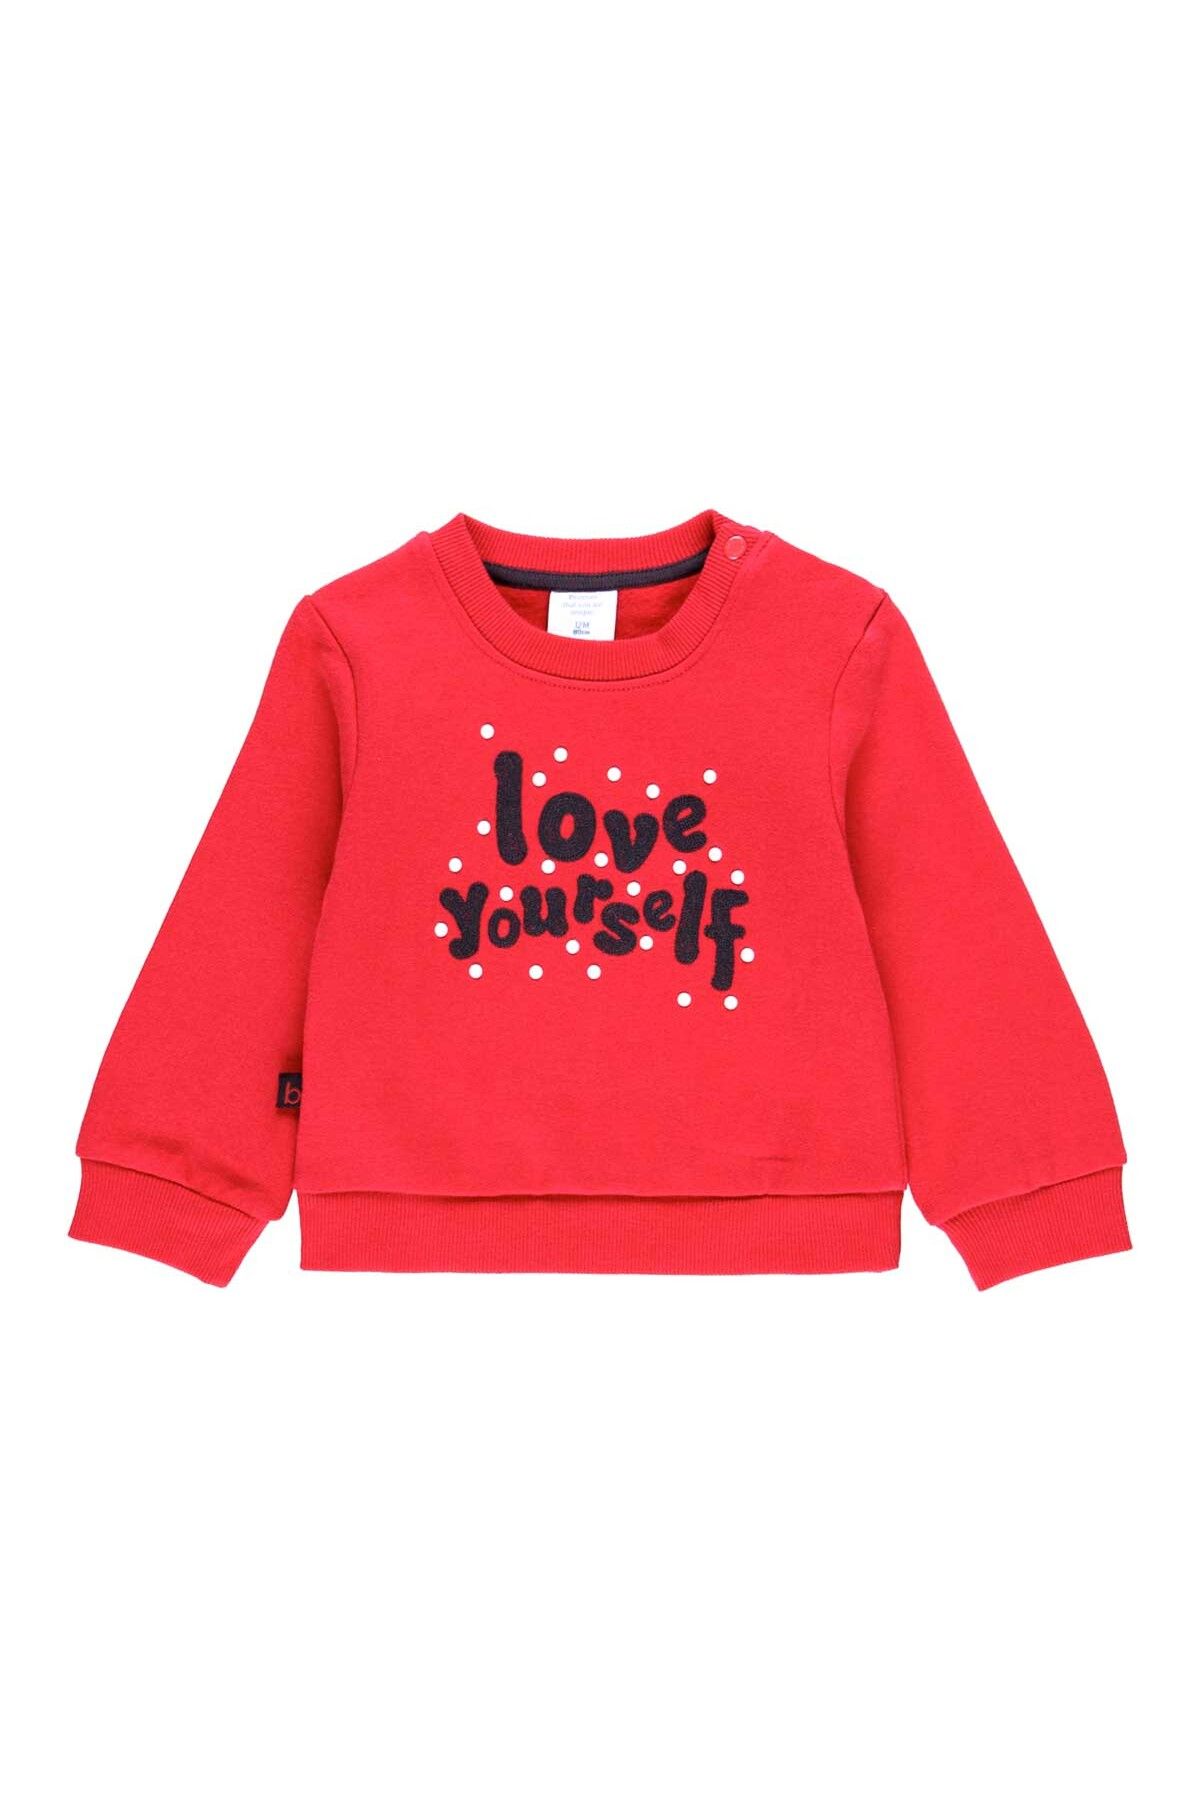 Boboli Kız Bebek Uzun Kollu Sweatshirt Yazı Baskılı Kırmızı